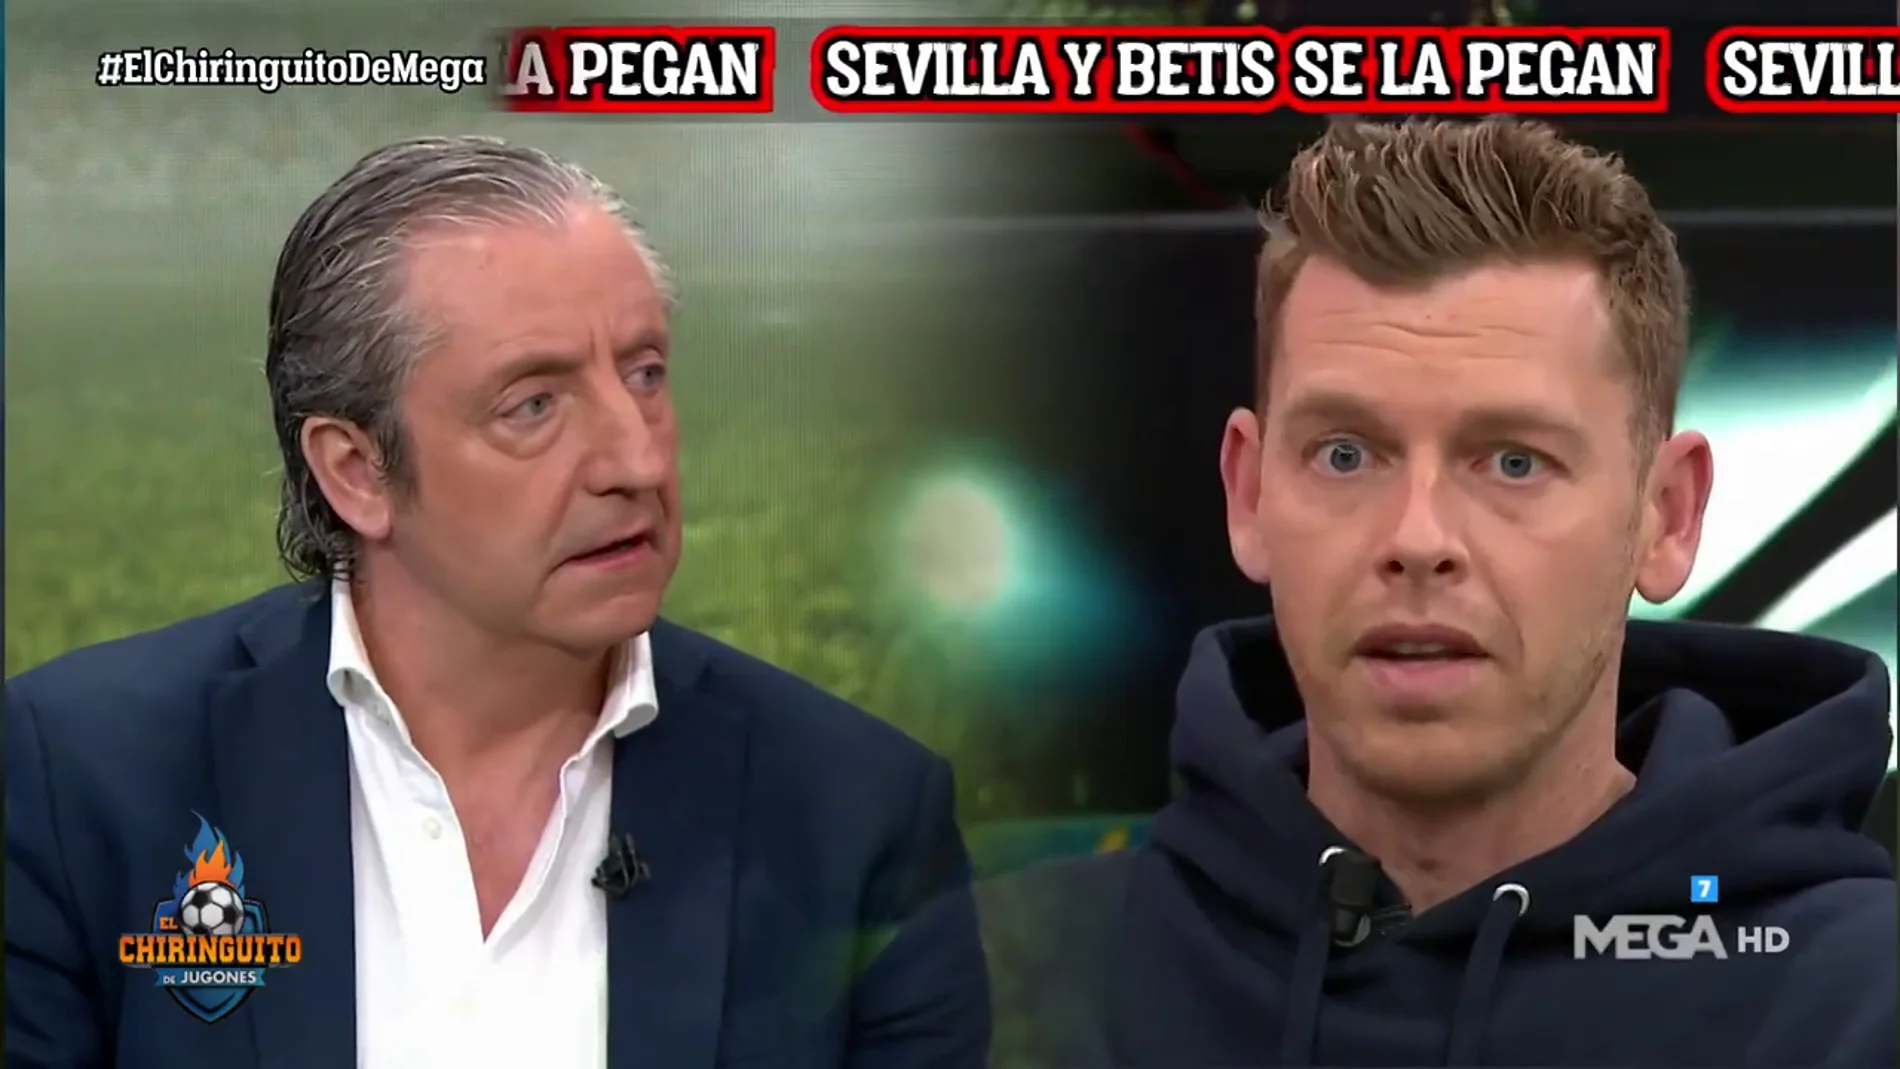 Jota Jordi: "Pedri con 19 años es mucho mejor que Messi, Modric o Laudrup a su edad"